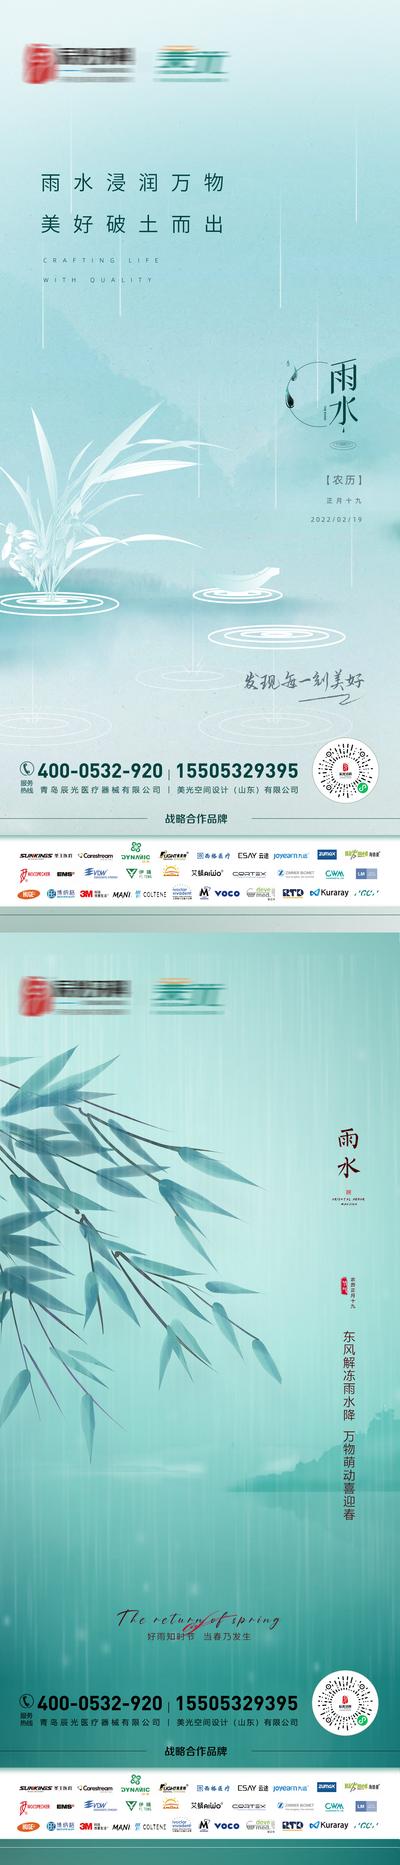 南门网 海报 二十四节气 雨水 下雨 竹叶 系列